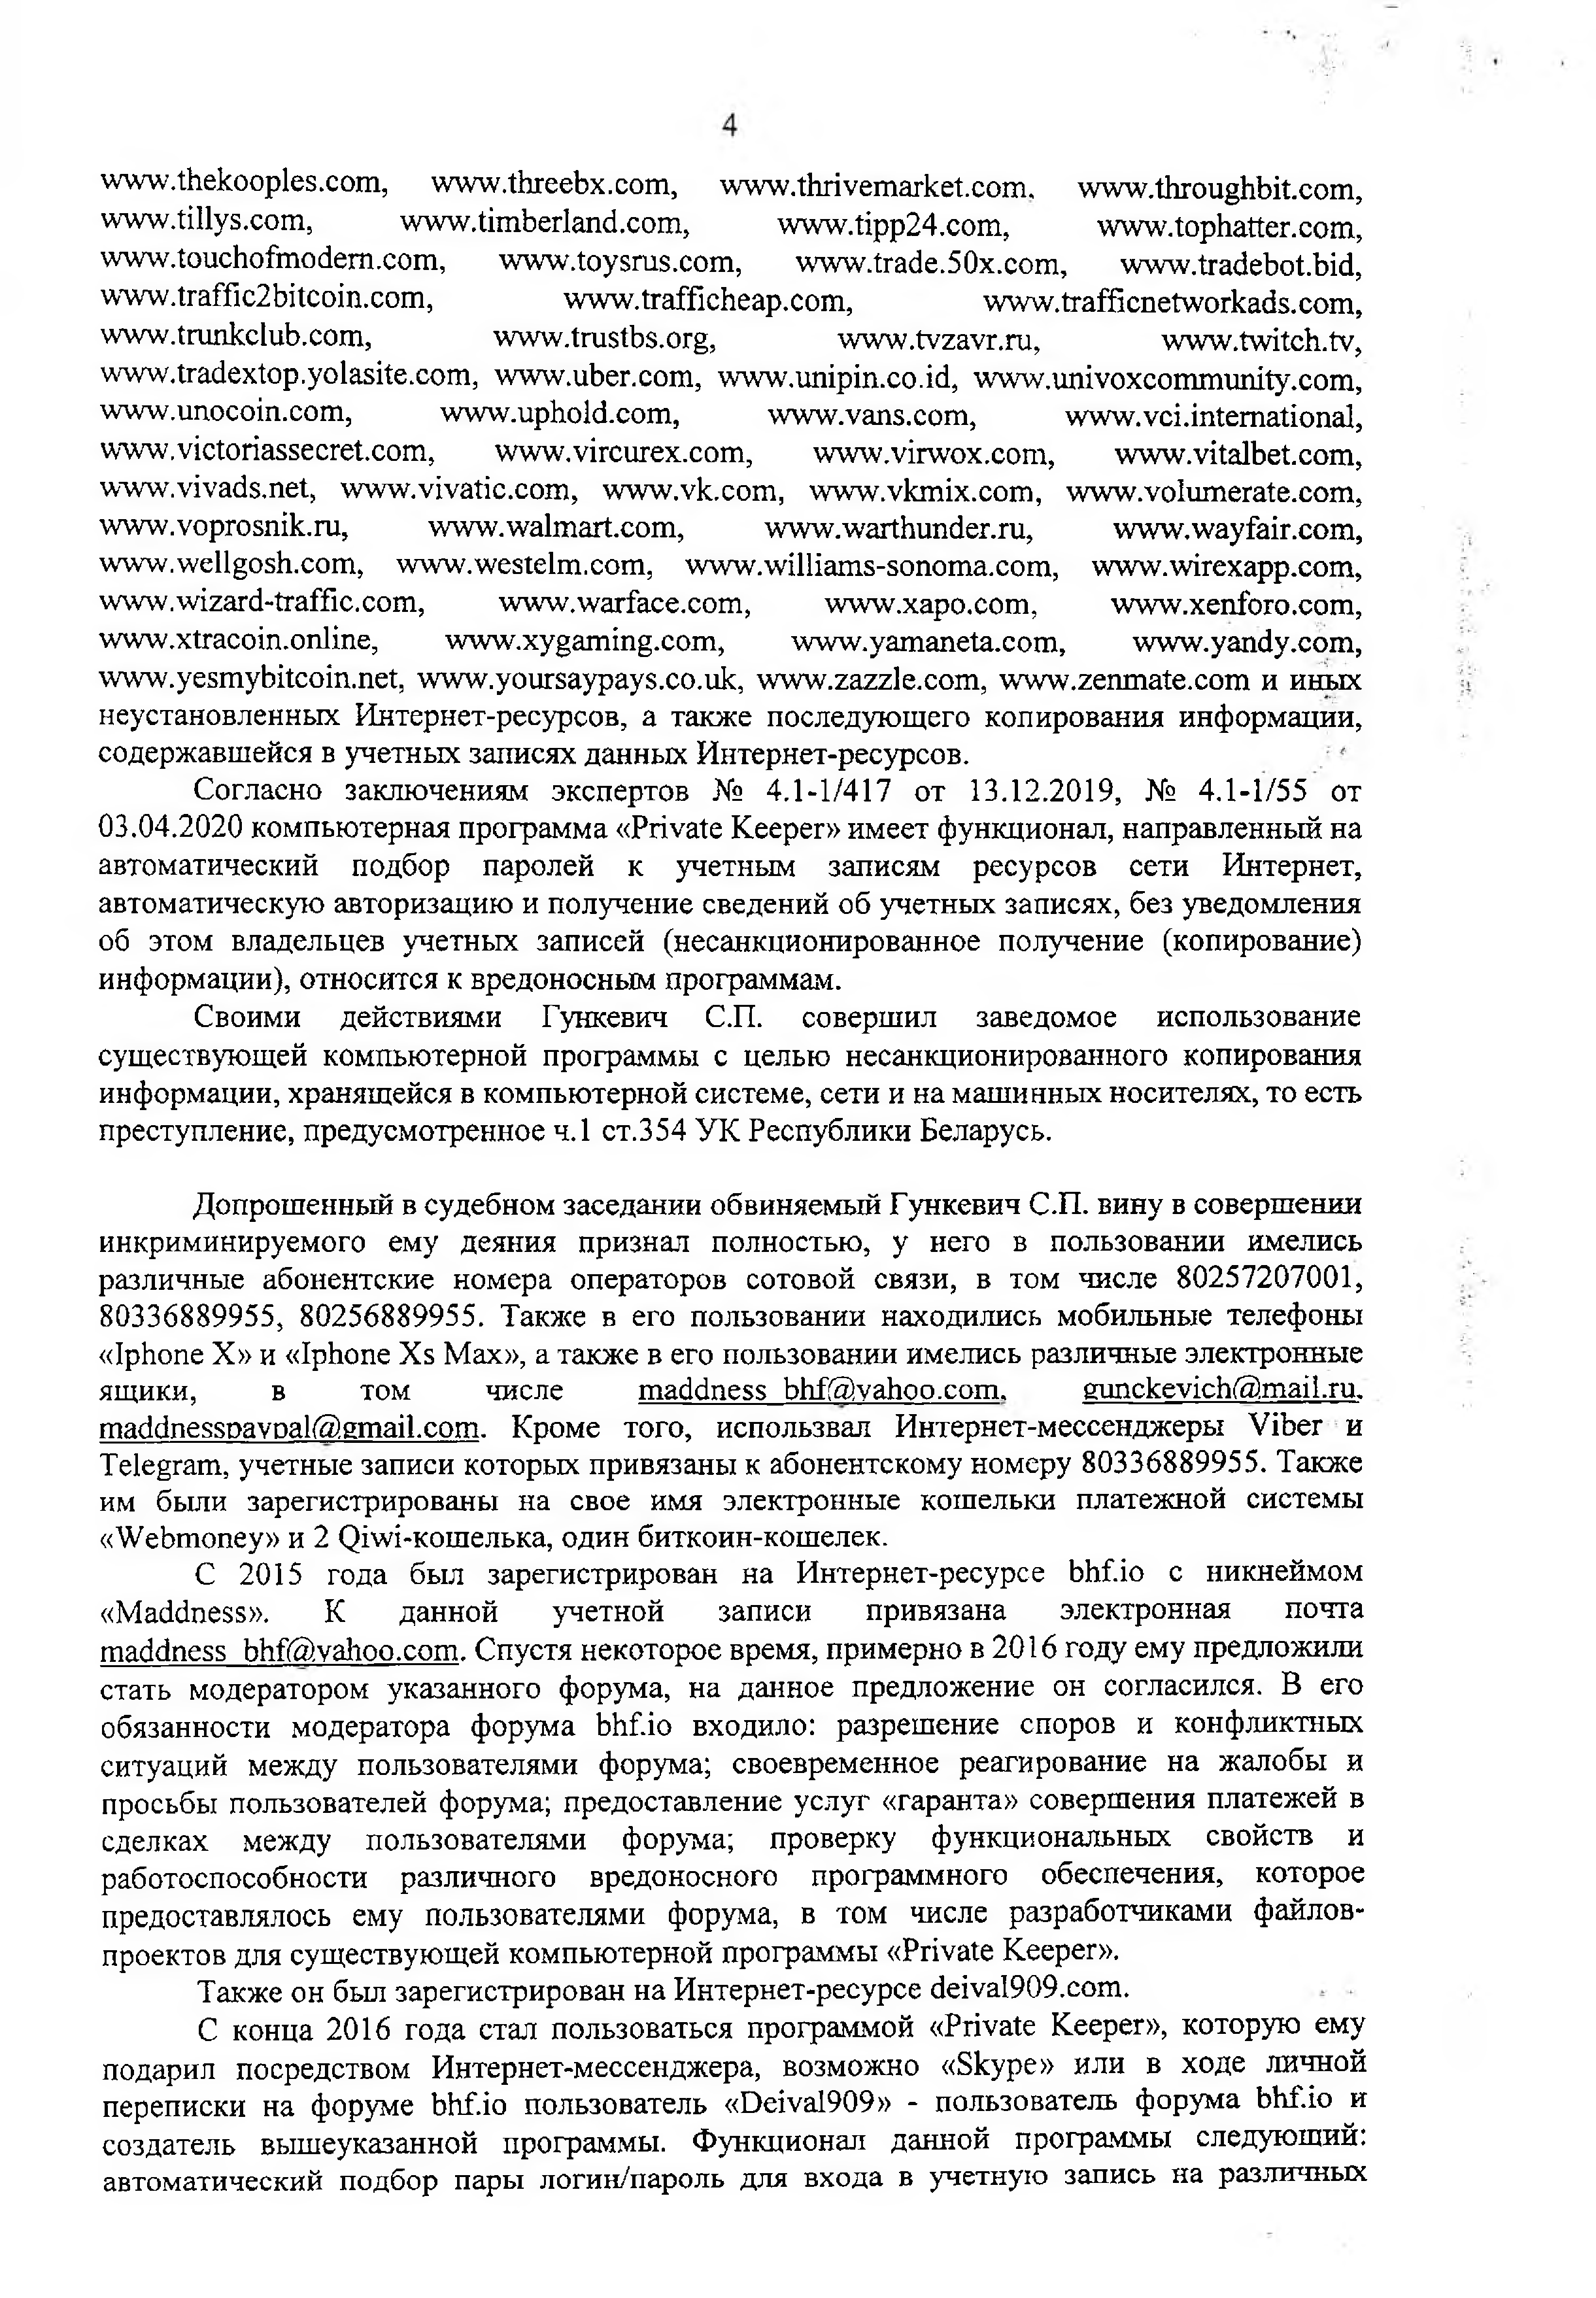 Постановление по Гункевичу (Страница 4)